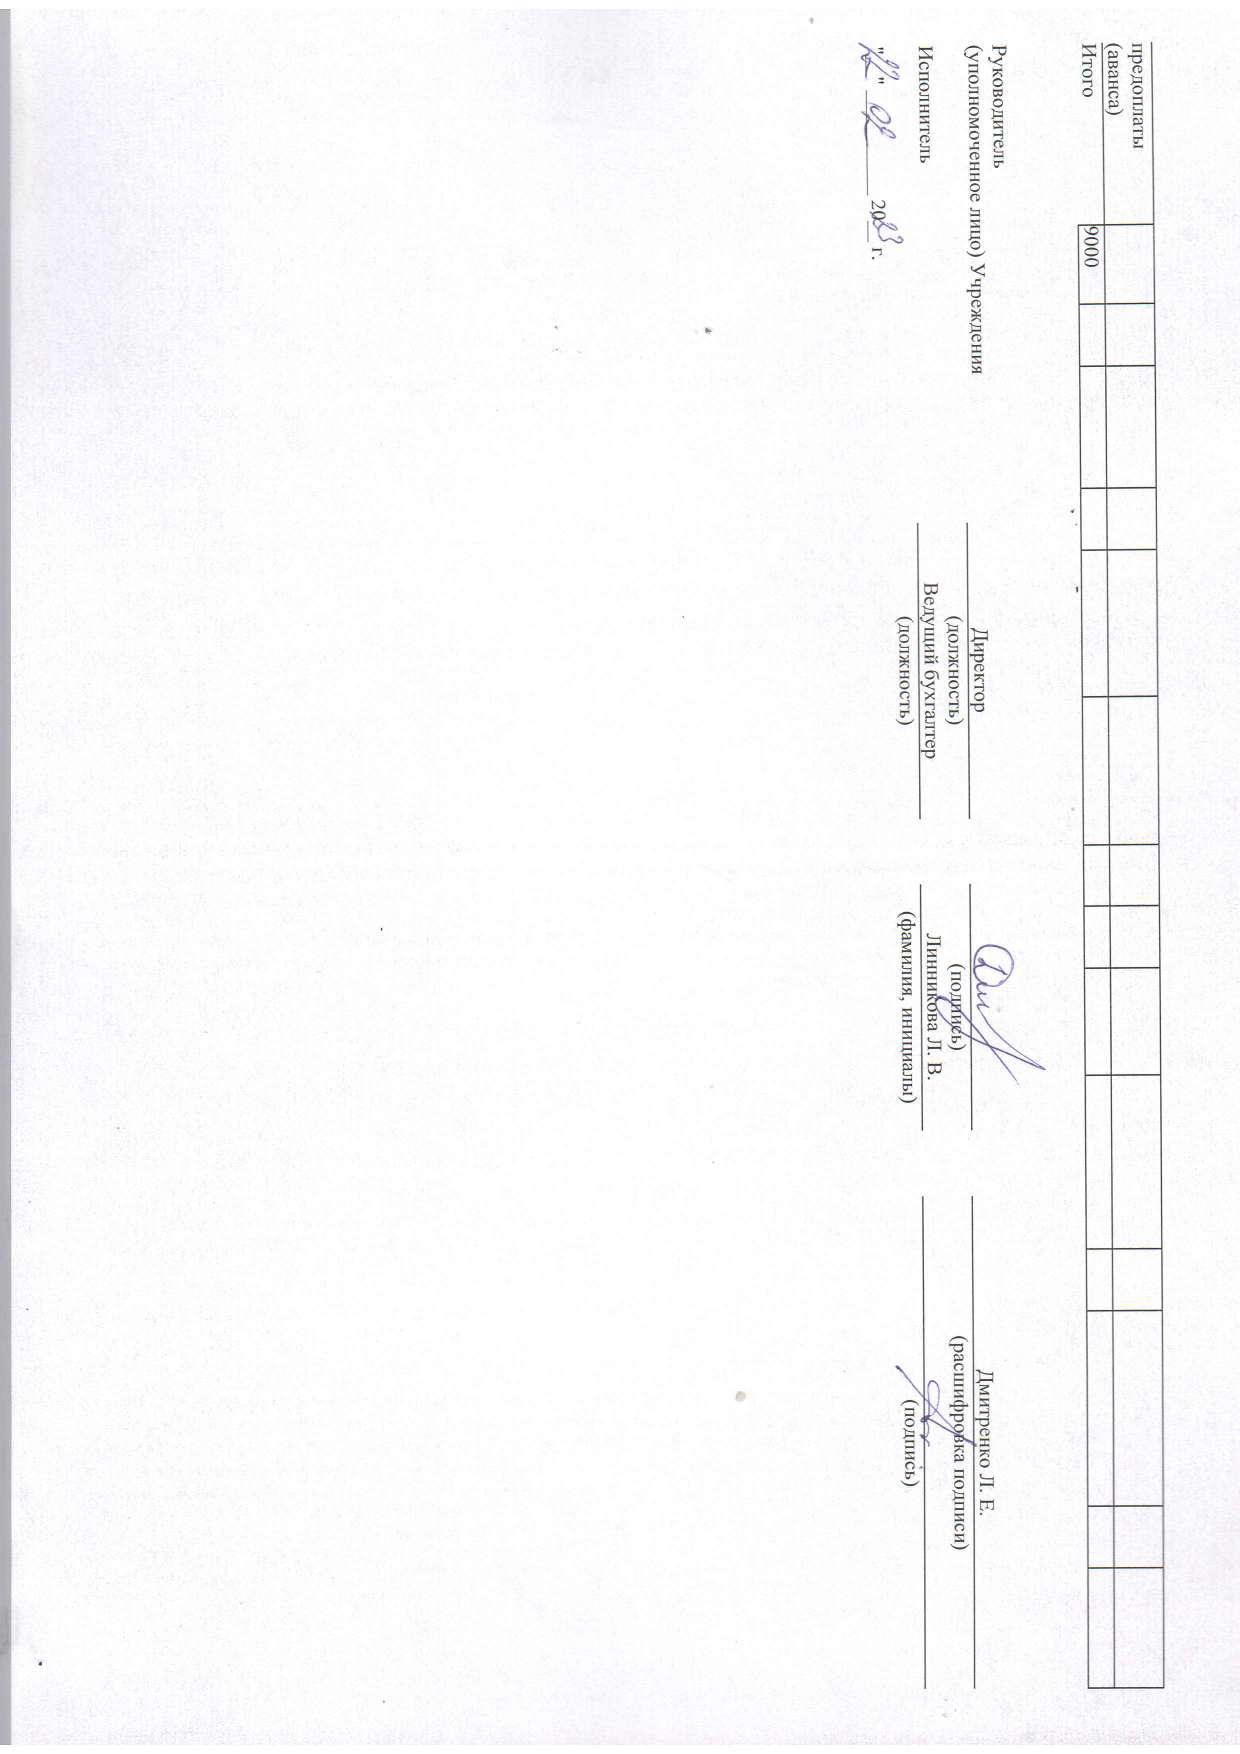 Отчет о результатах деятельности муниципального учреждения на 01.01.2023 г_page-0011.jpg